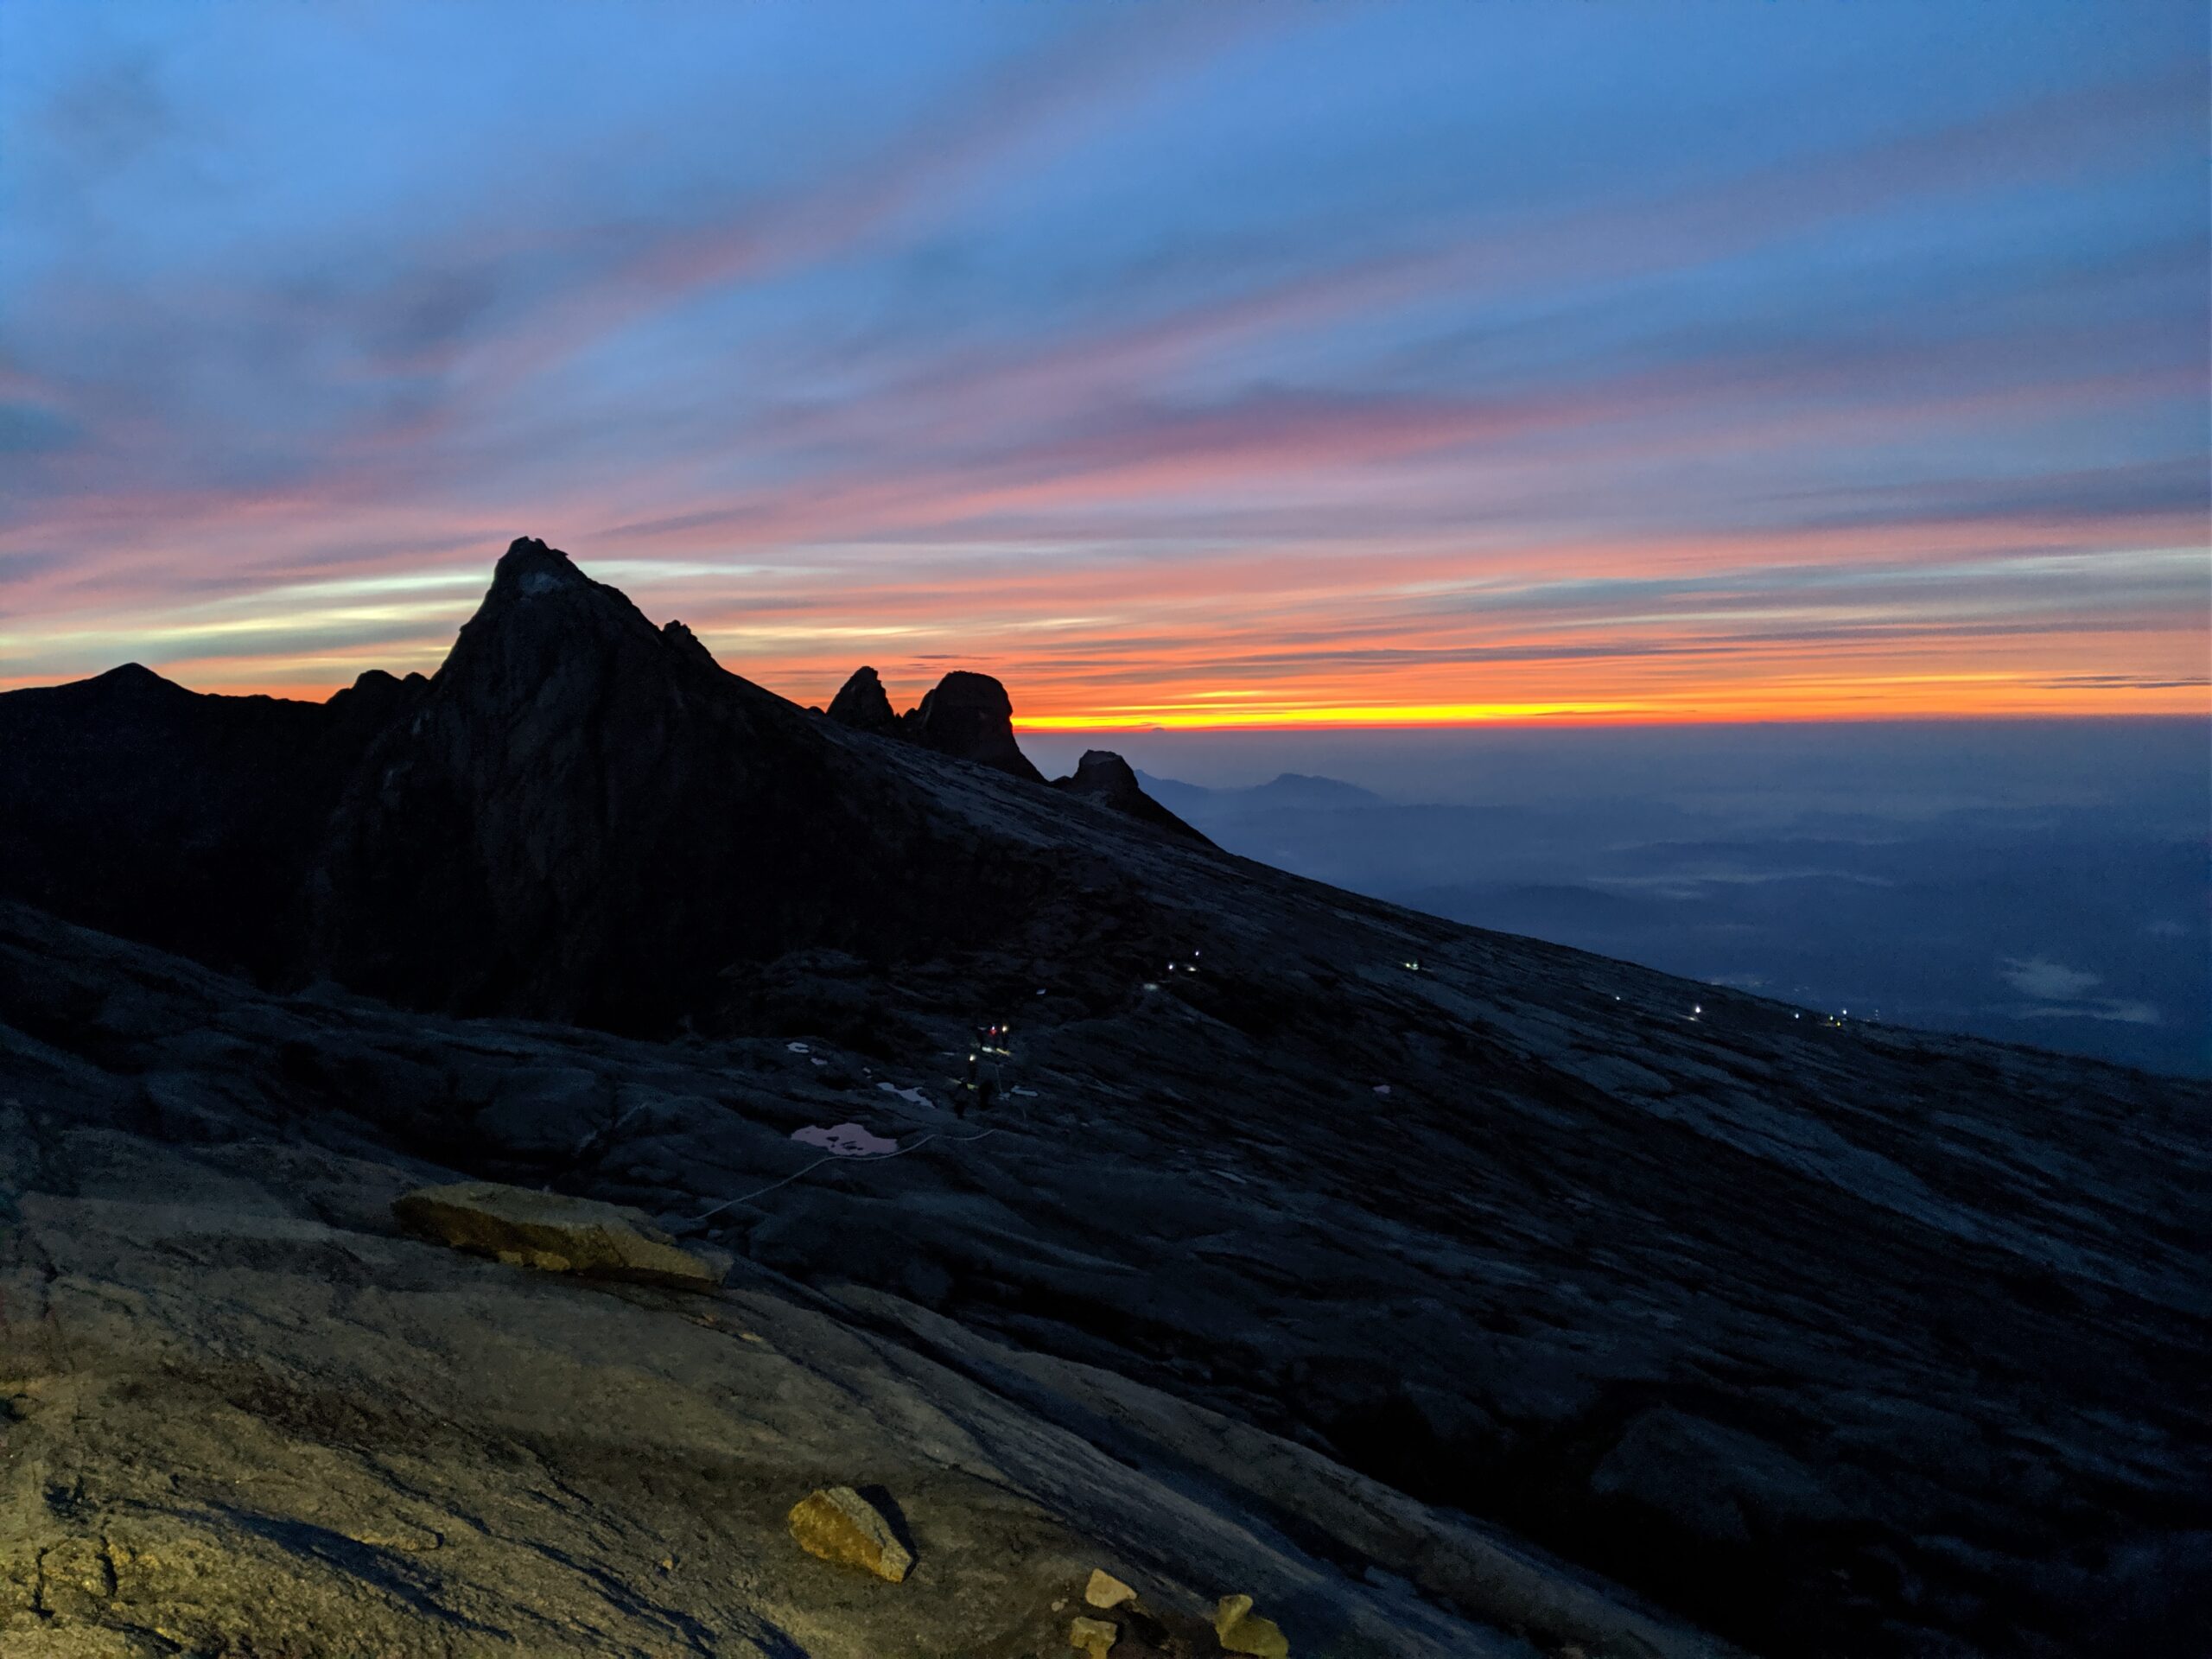 Mount Kinabalu and Crocker range at sunrise